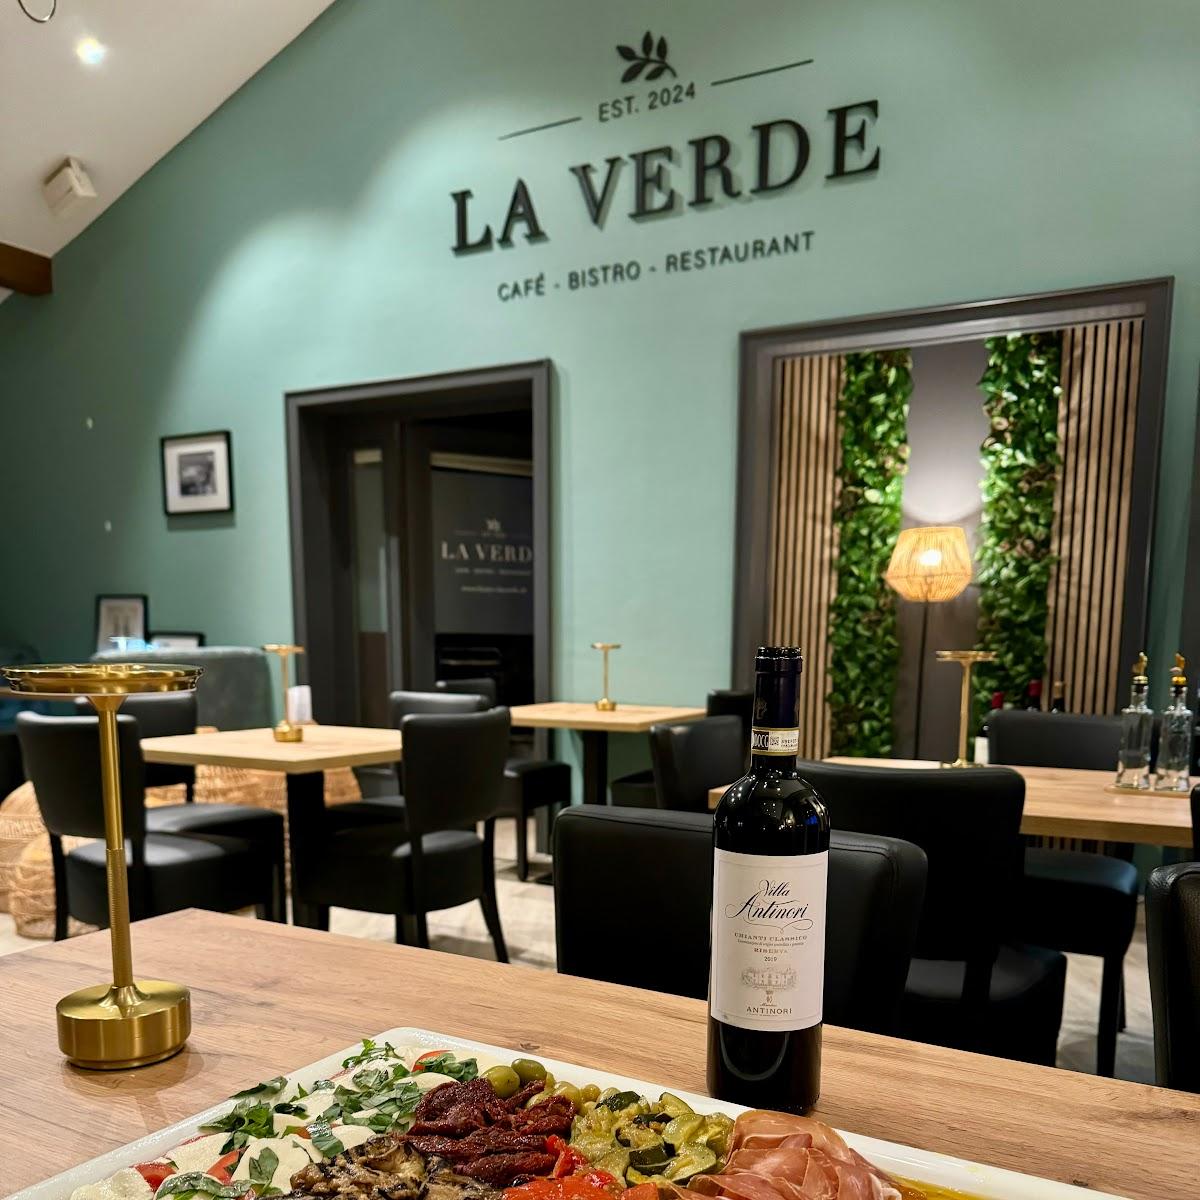 Restaurant "La Verde" in Windhagen